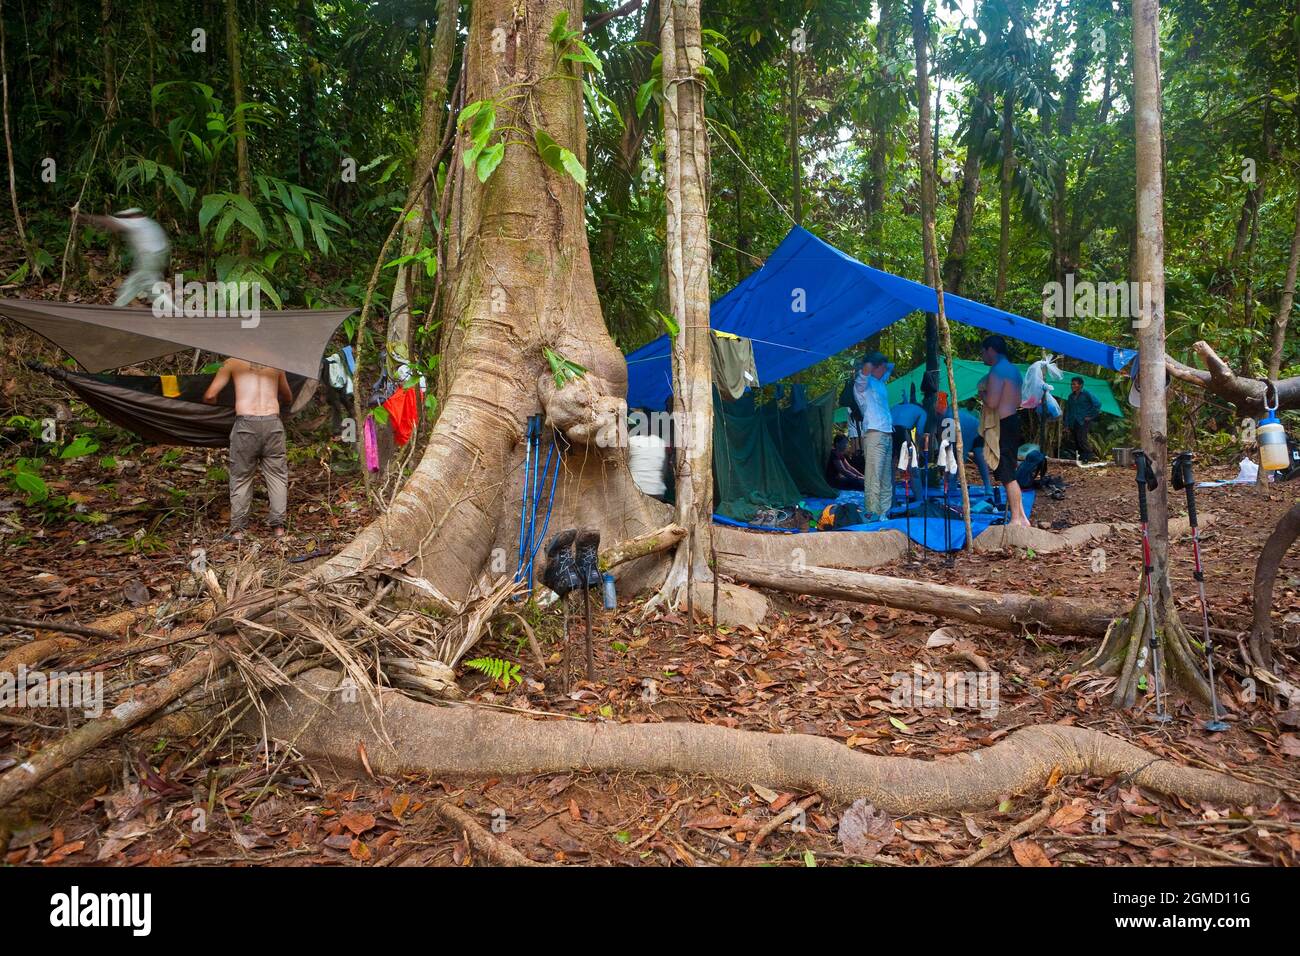 Regenwald Campen Sie auf einer Wanderung entlang des alten und überwucherten Camino Real Trail, Portobelo Nationalpark, Provinz Colon, Republik Panama, Mittelamerika. Stockfoto